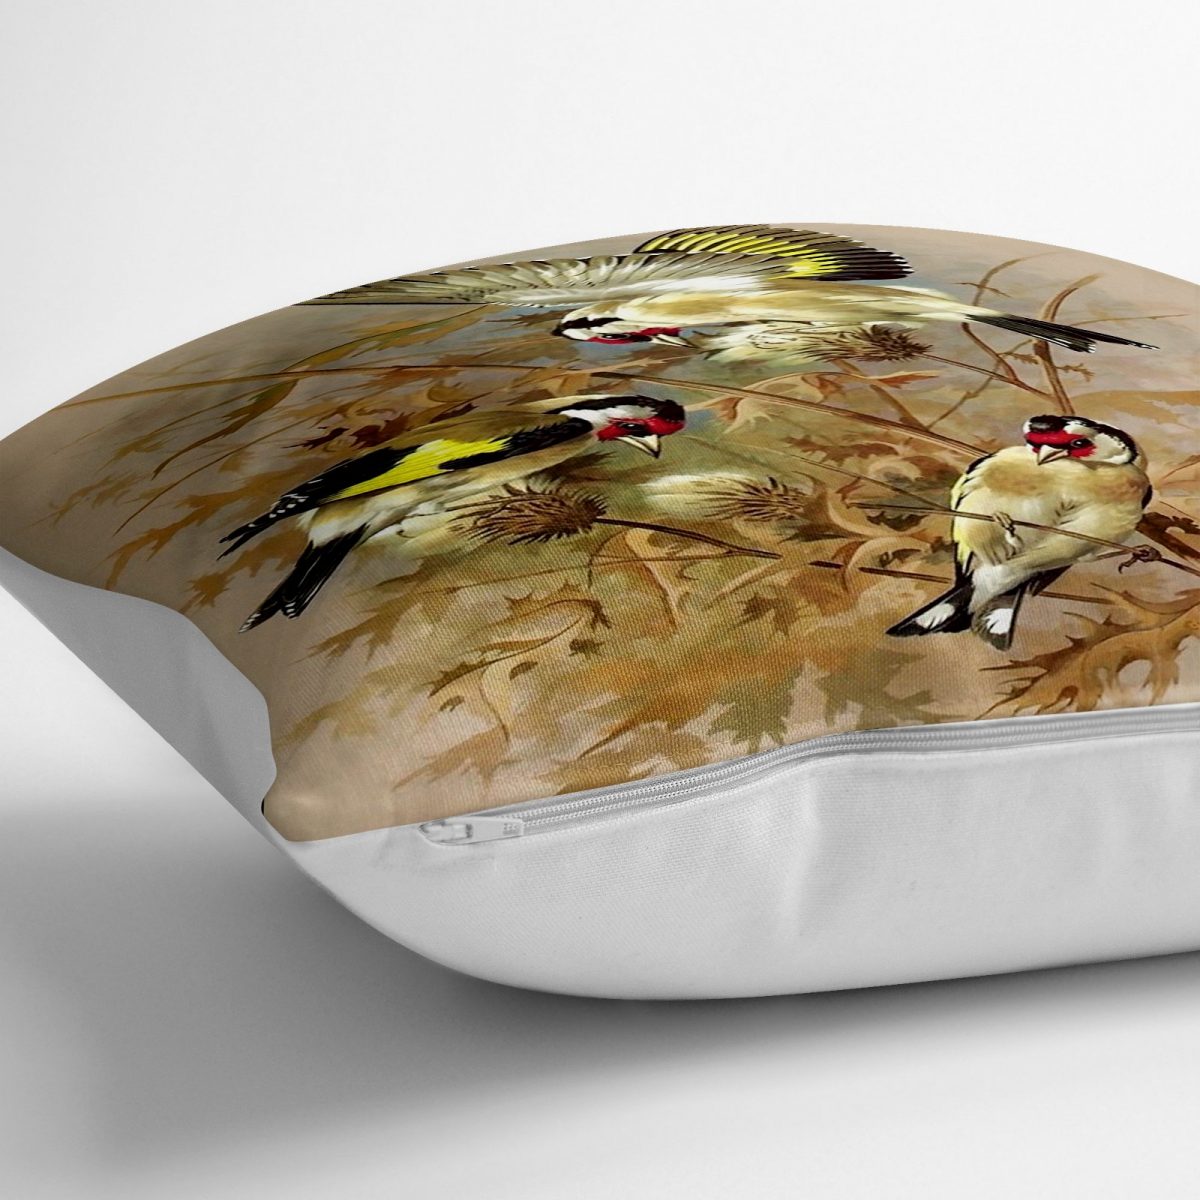 Saka Kuşlu Dijital Baskılı Dekoratif Yer Minderi - 70 x 70 cm Realhomes